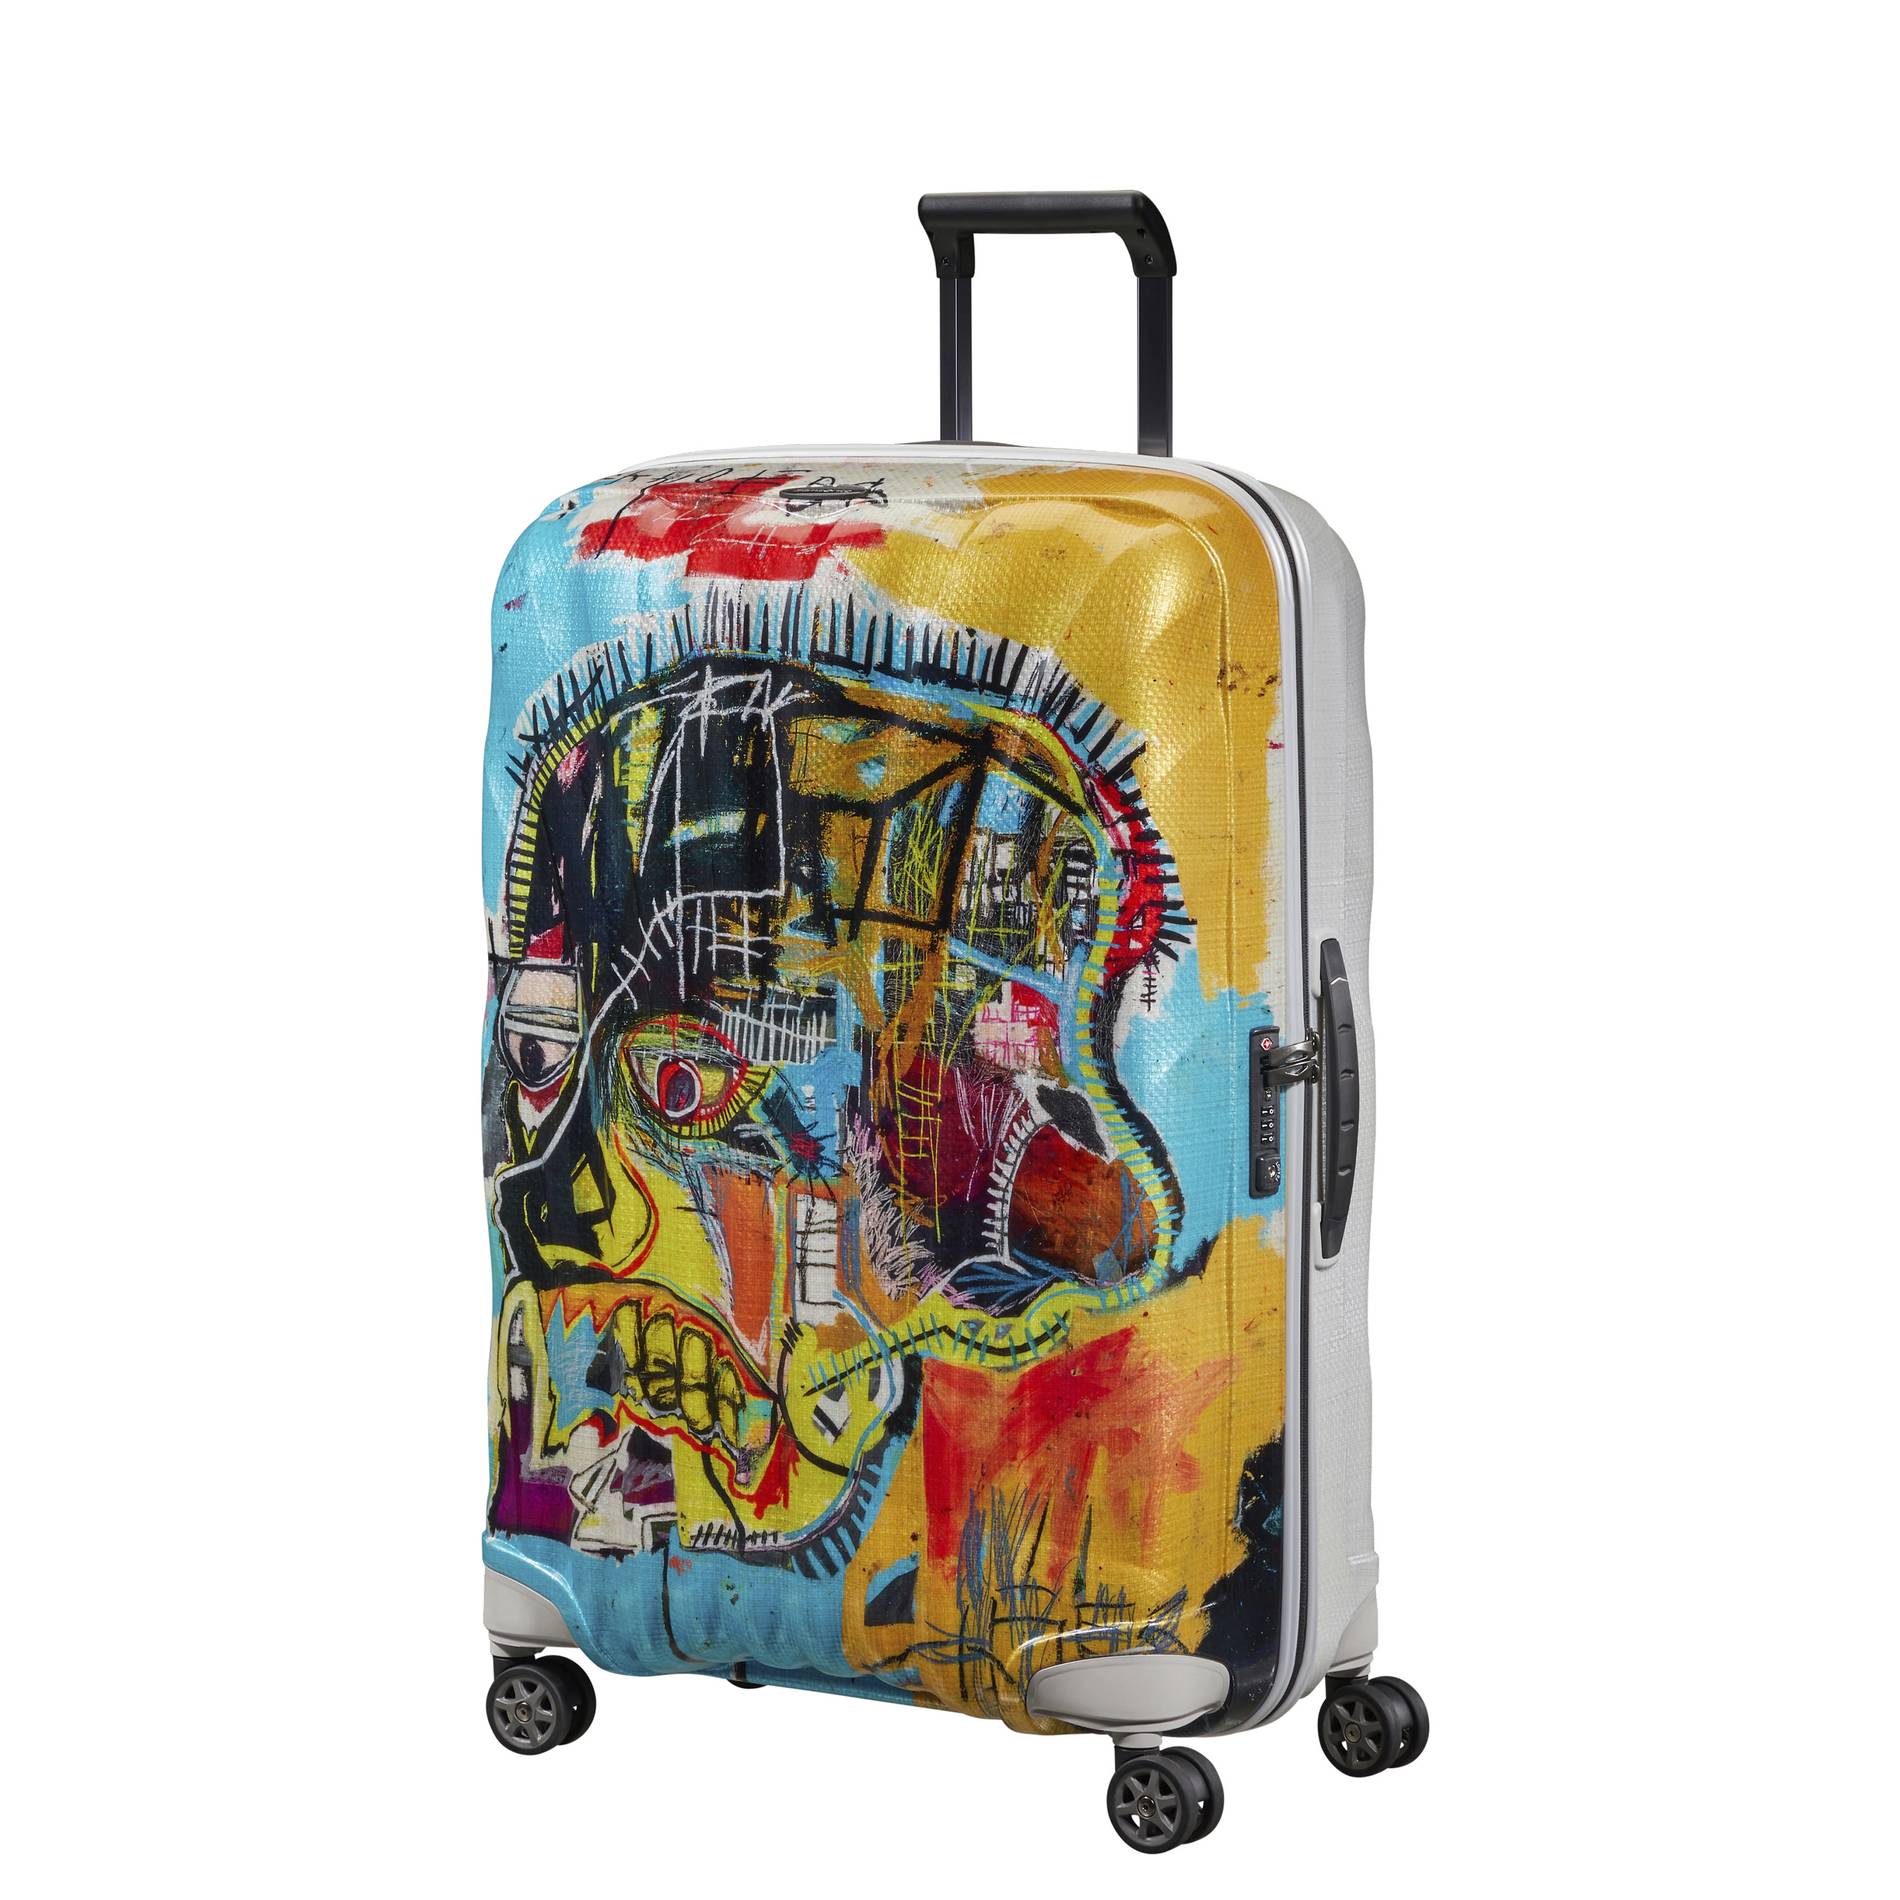 samsonite x jean-michel basquiat luggage pieces, United Skull design